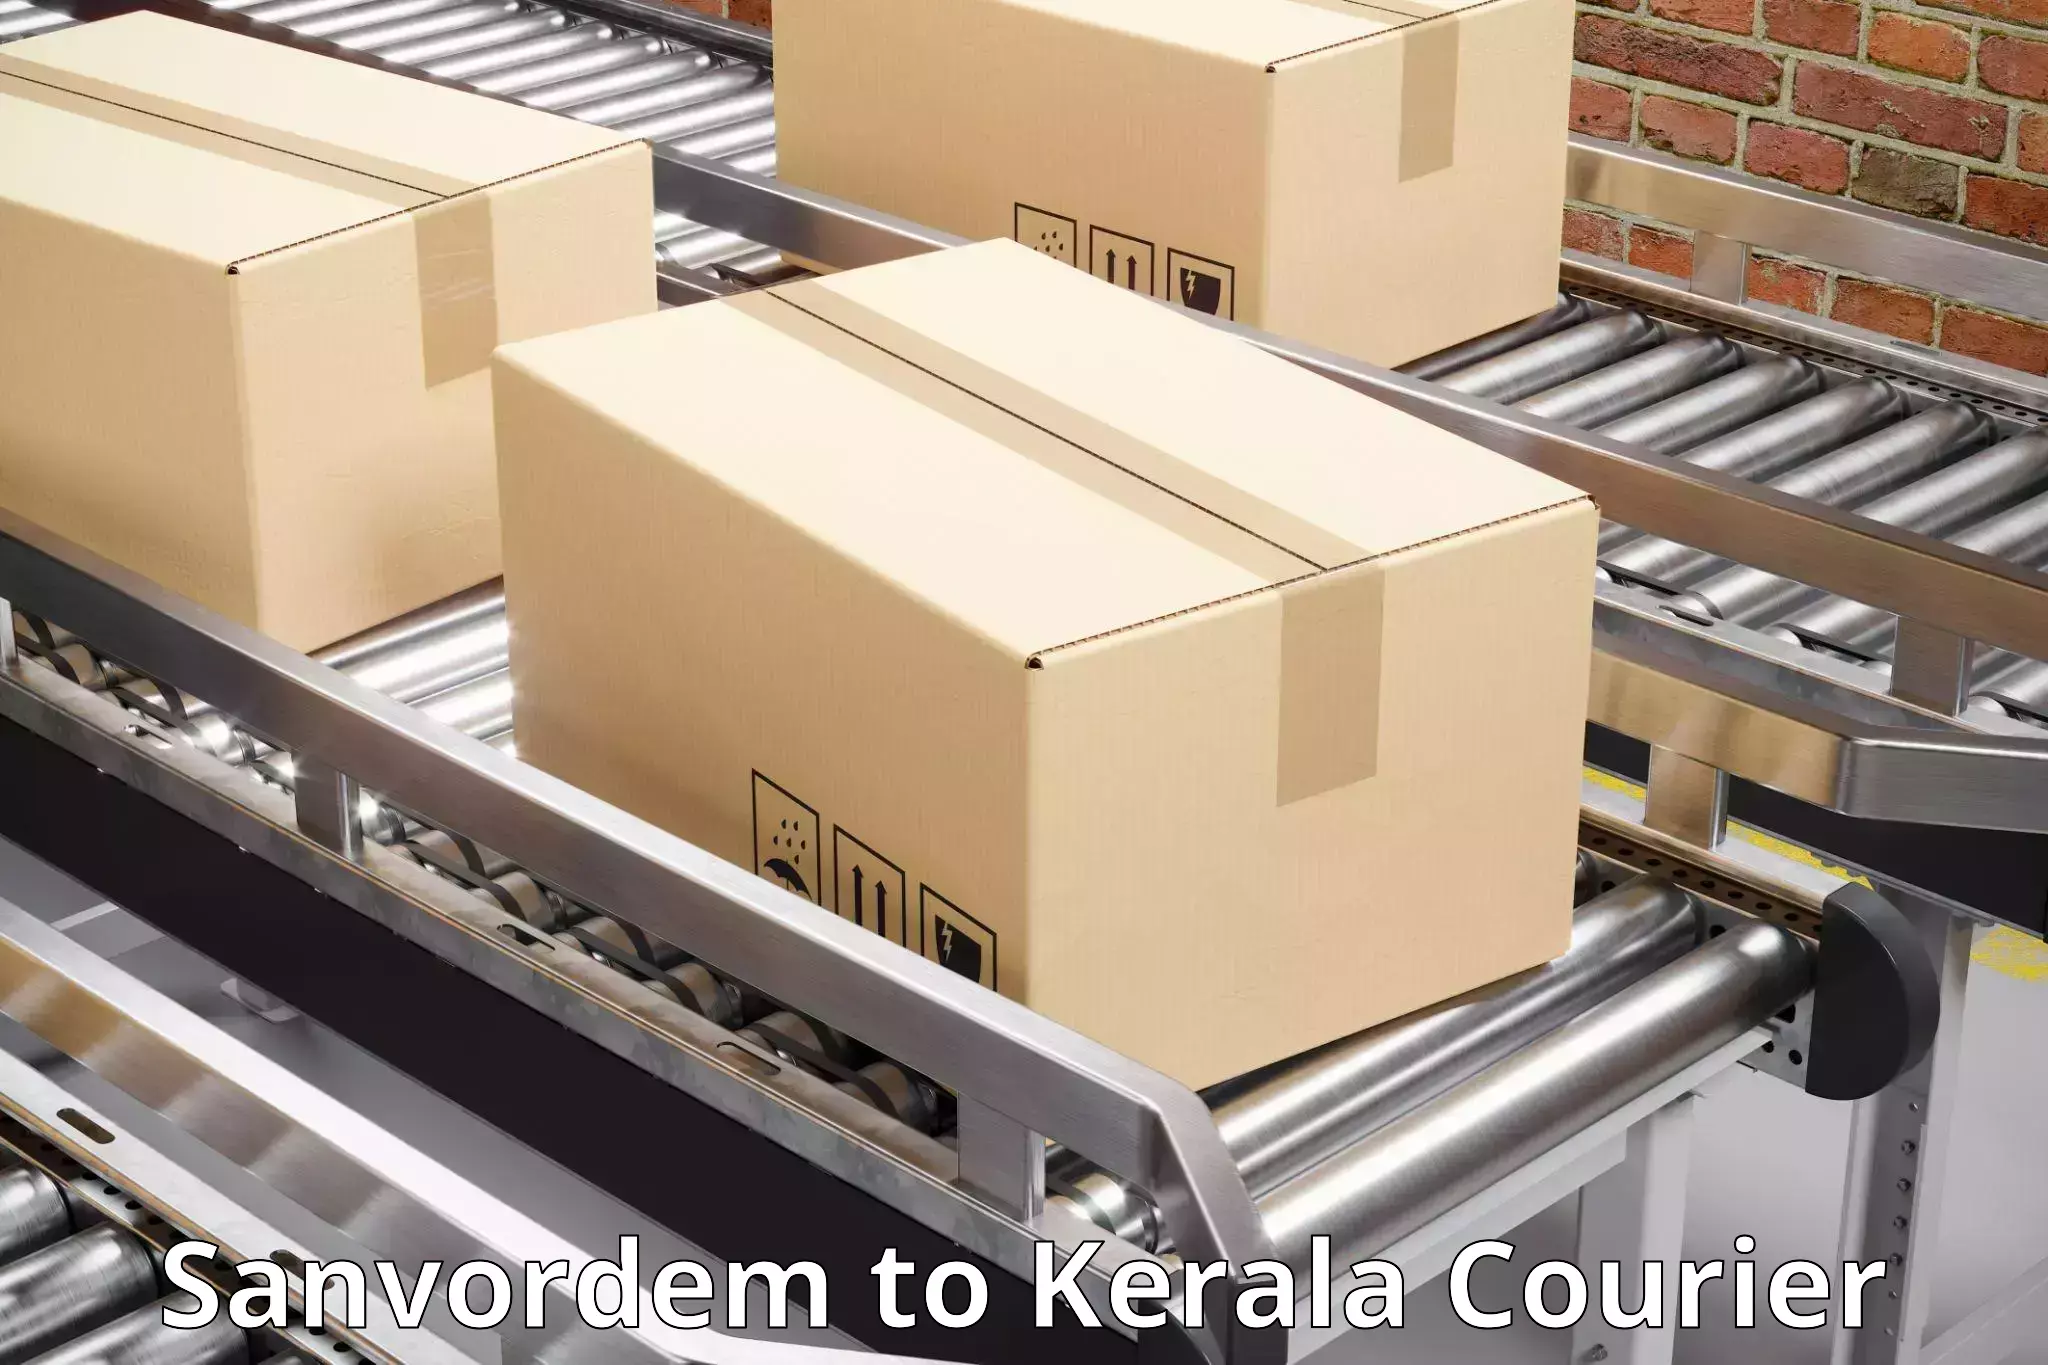 Courier service comparison Sanvordem to Adur Kla